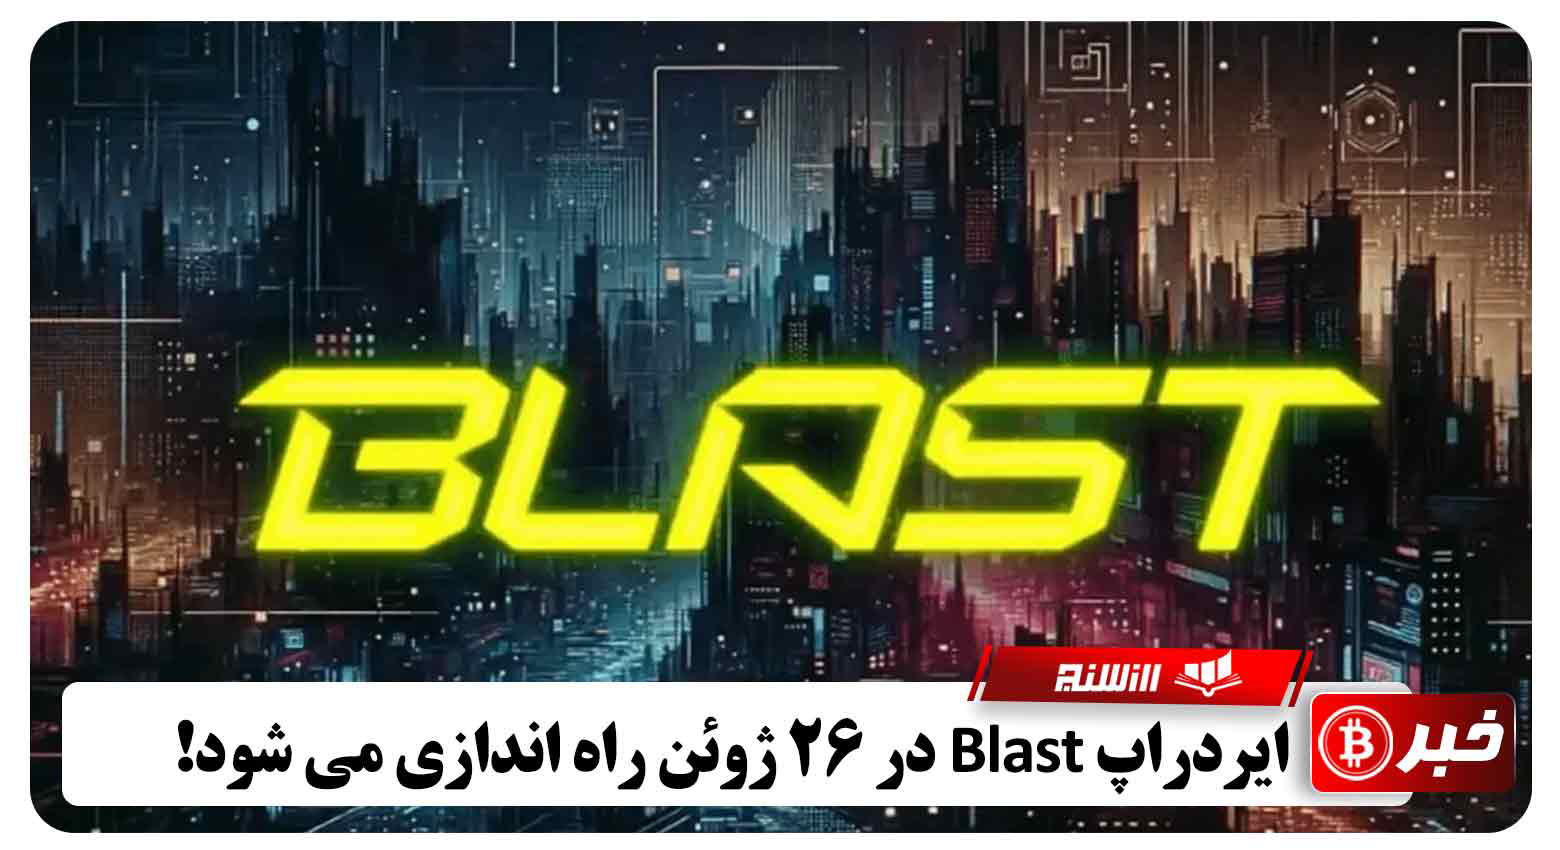 ایردراپ Blast در 26 ژوئن راه اندازی می شود